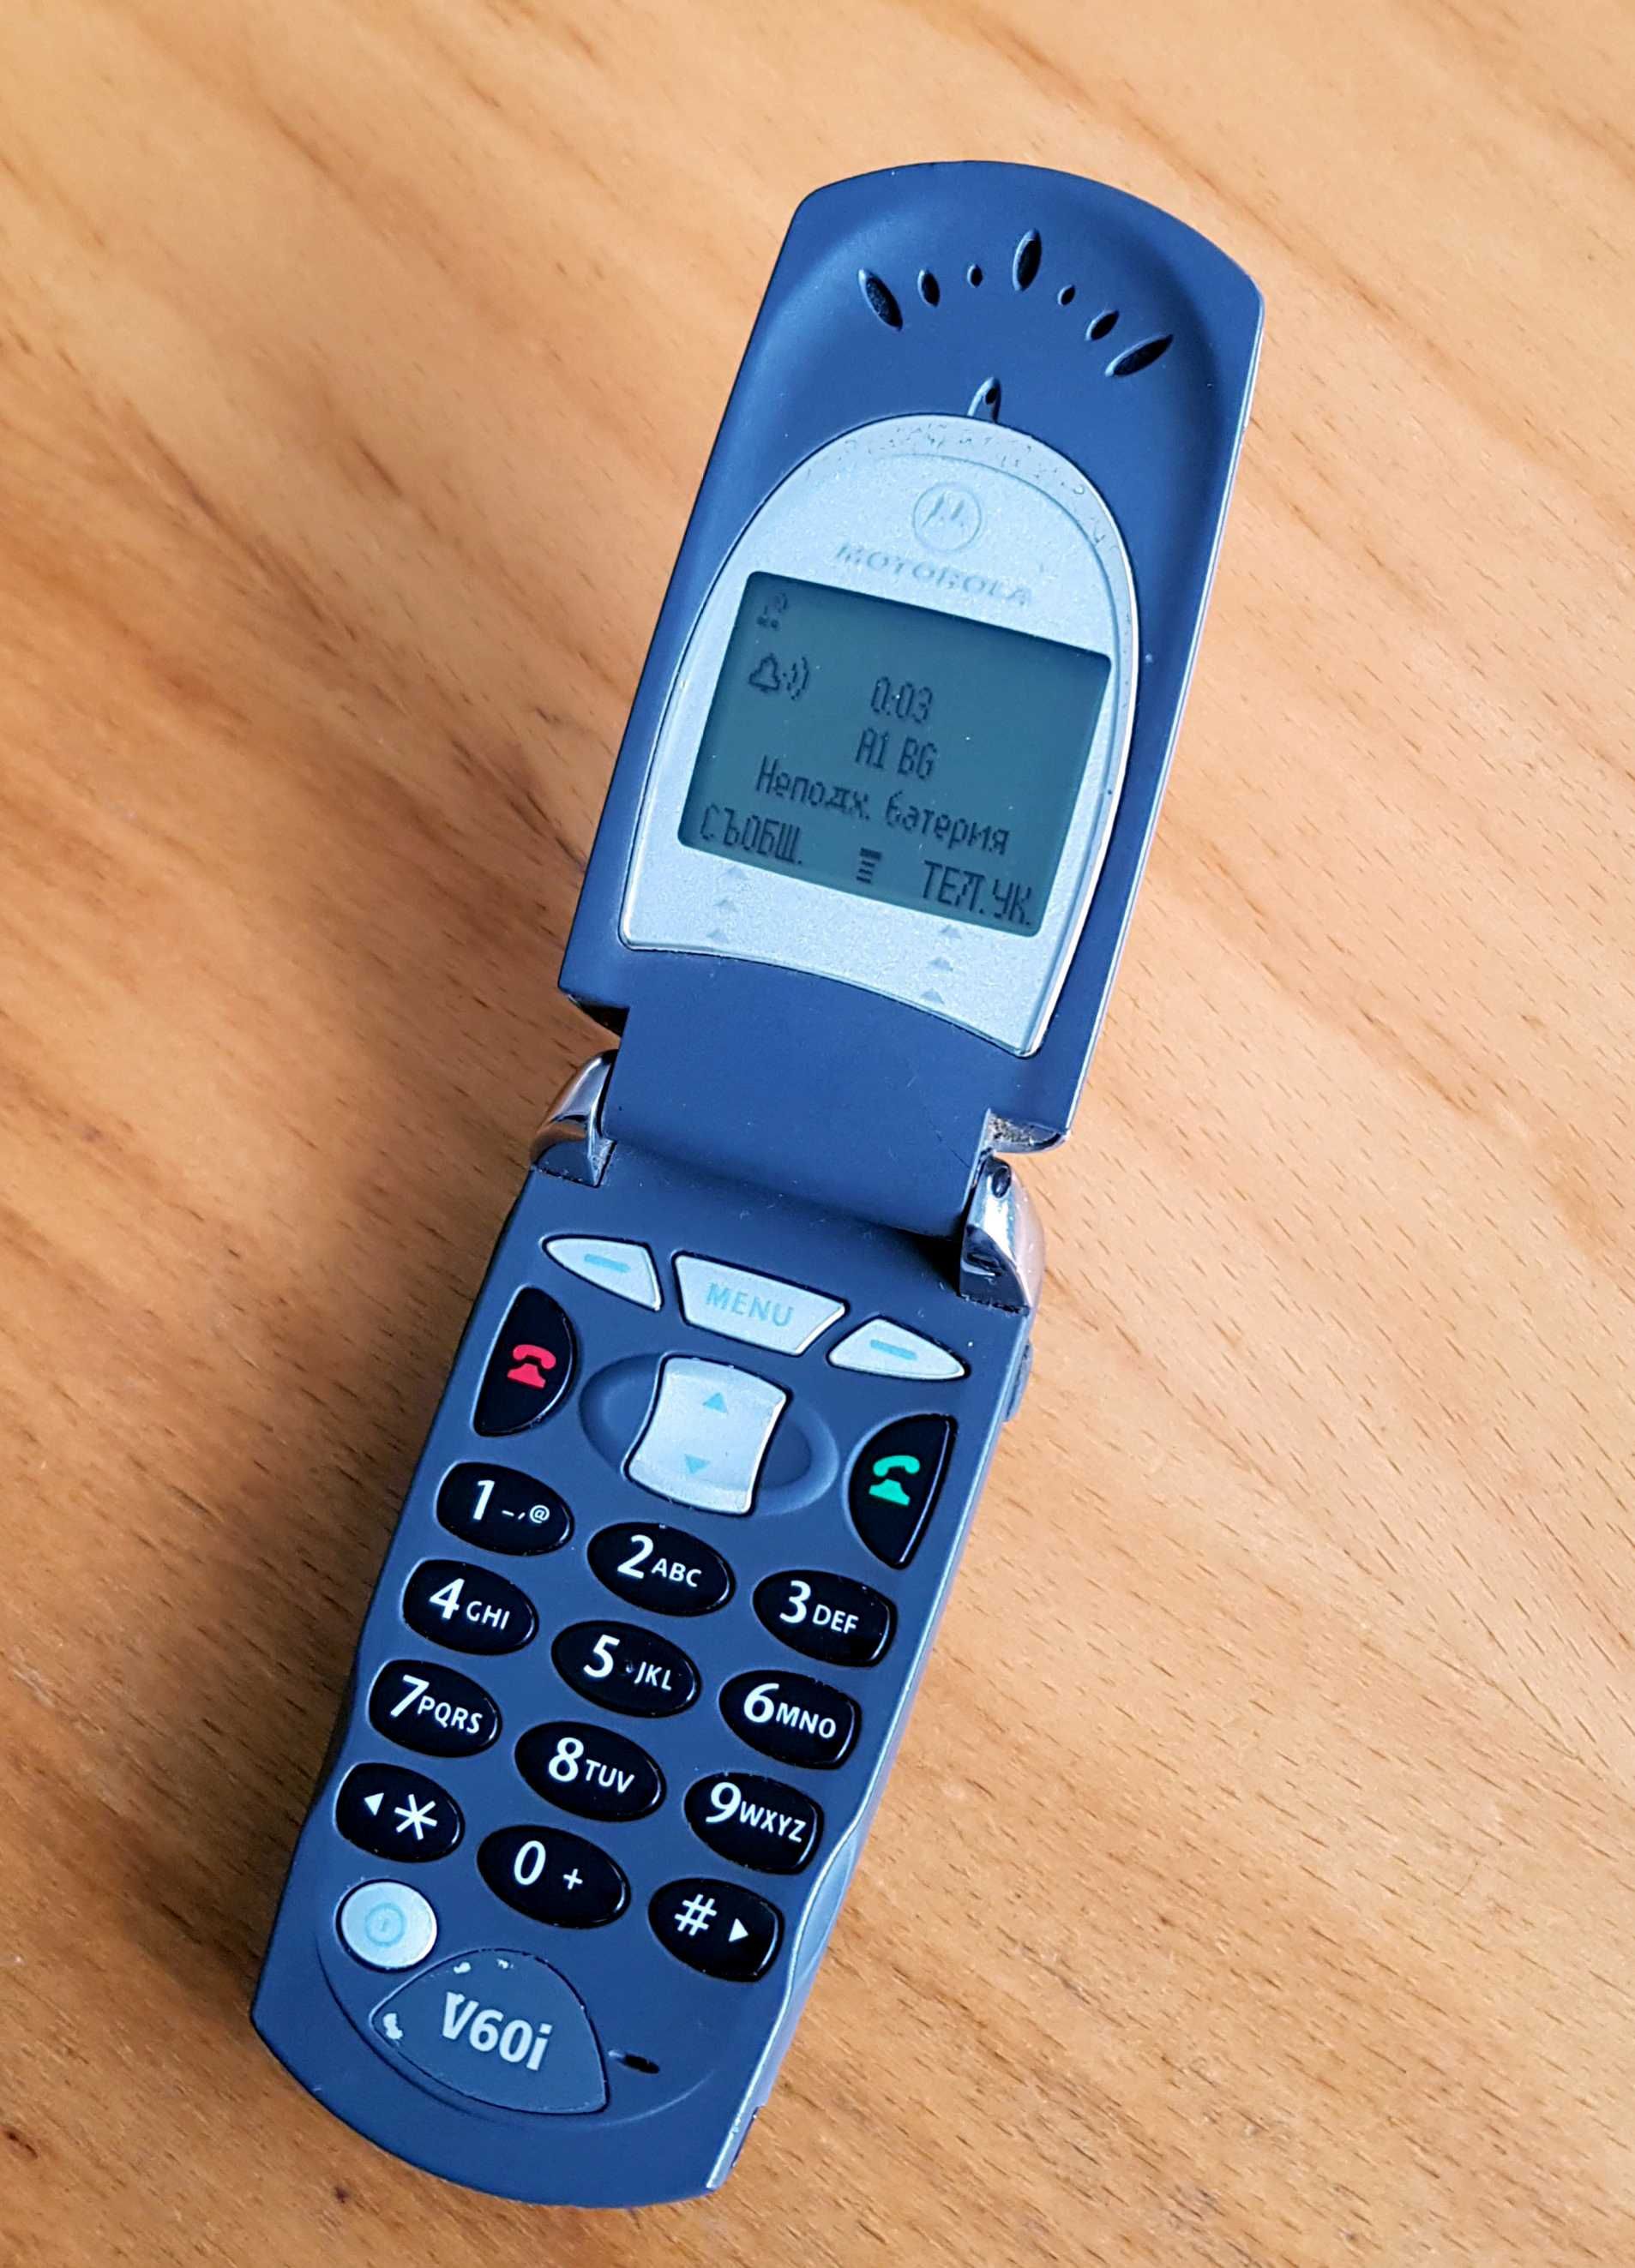 GSM Motorola V60i